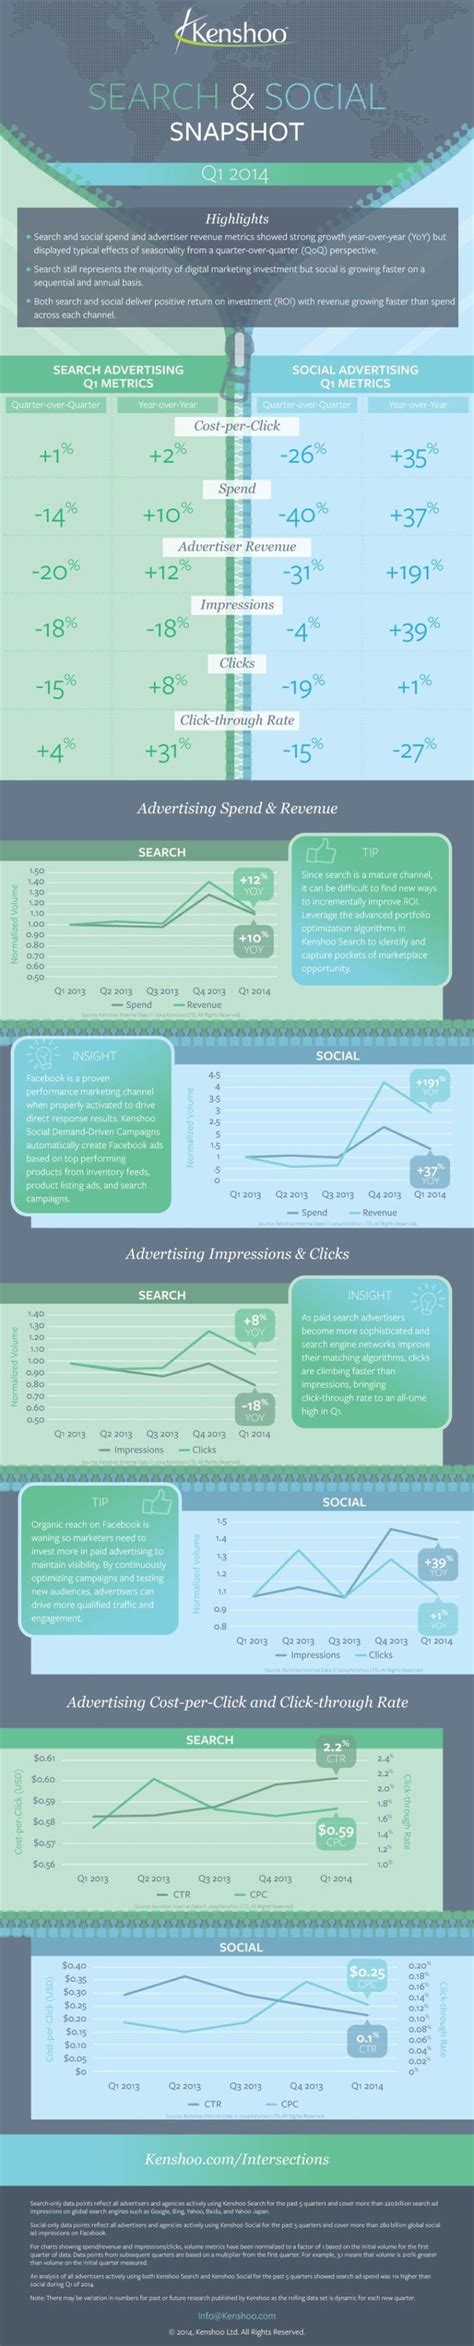 K­ü­r­e­s­e­l­ ­ö­l­ç­e­k­t­e­ ­d­i­j­i­t­a­l­ ­r­e­k­l­a­m­ ­p­a­z­a­r­ı­n­ı­n­ ­i­l­k­ ­ç­e­y­r­e­k­ ­r­a­p­o­r­u­ ­[­i­n­f­o­g­r­a­f­i­k­]­